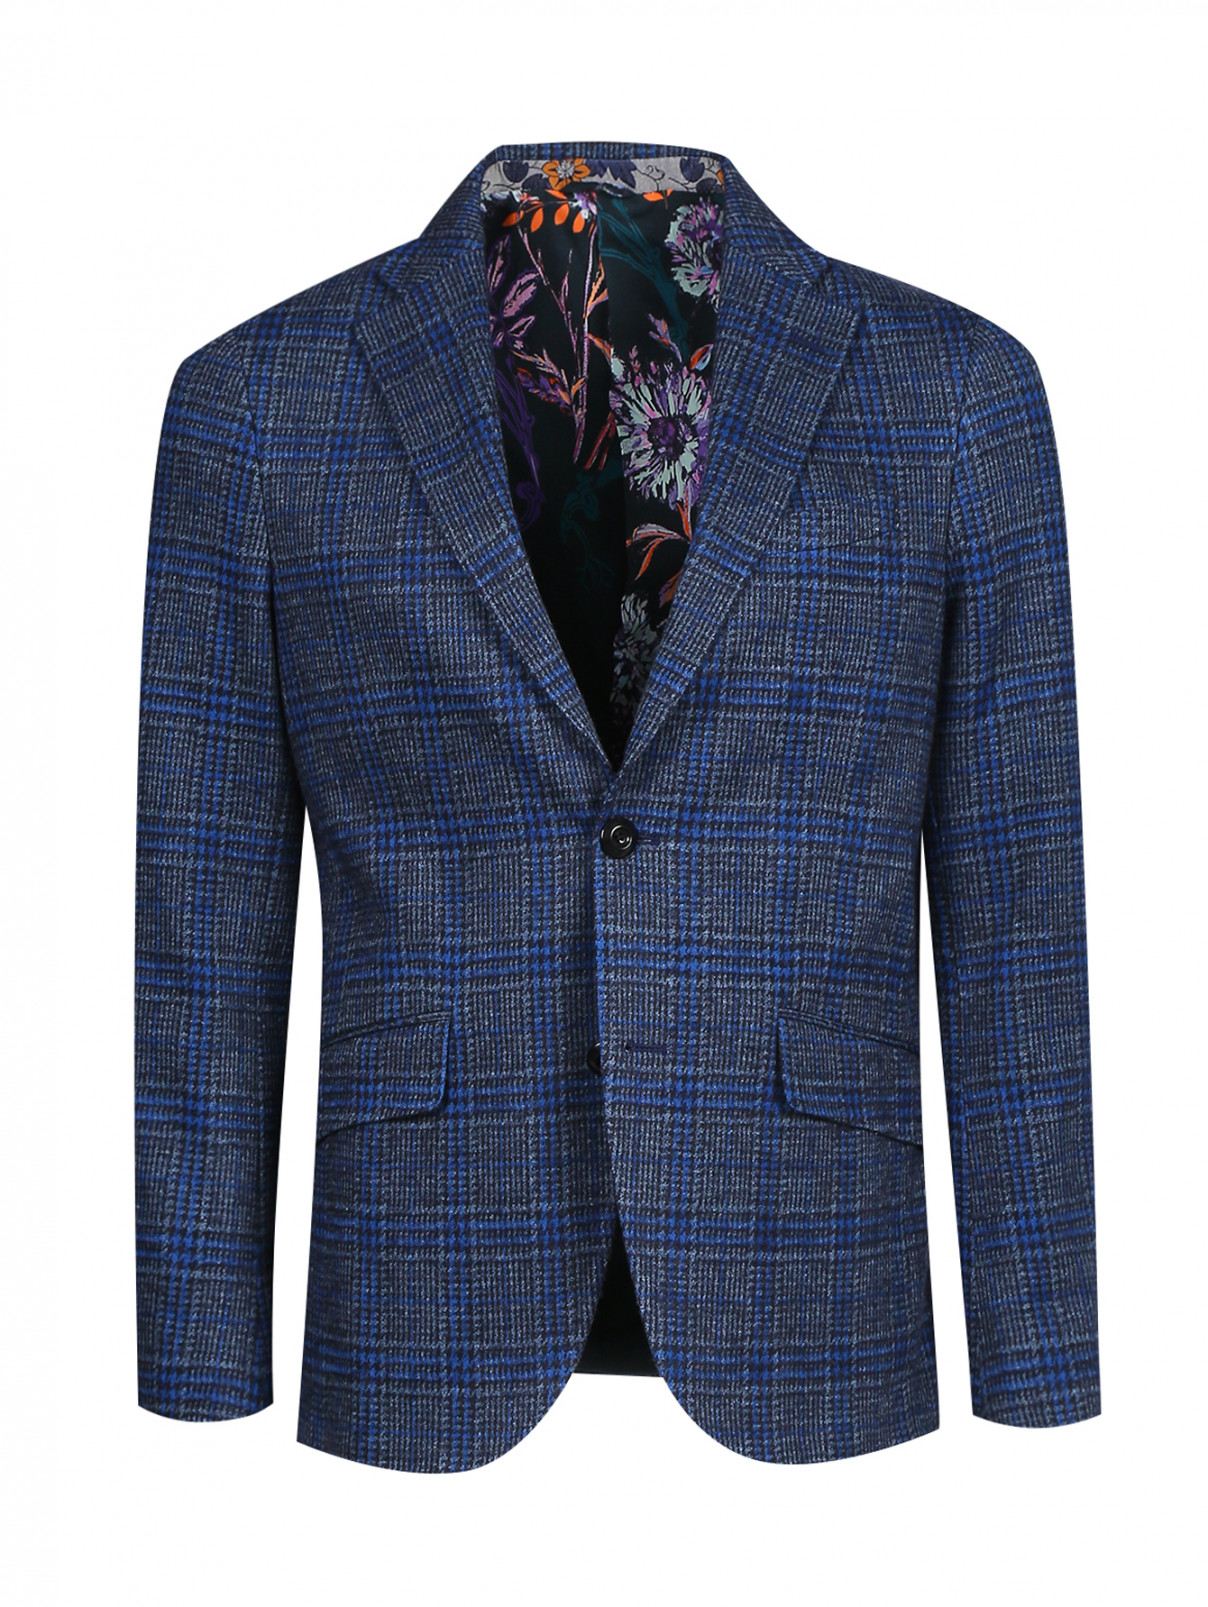 Пиджак однобортный из хлопка и шерсти с узором "клетка" Etro  –  Общий вид  – Цвет:  Синий